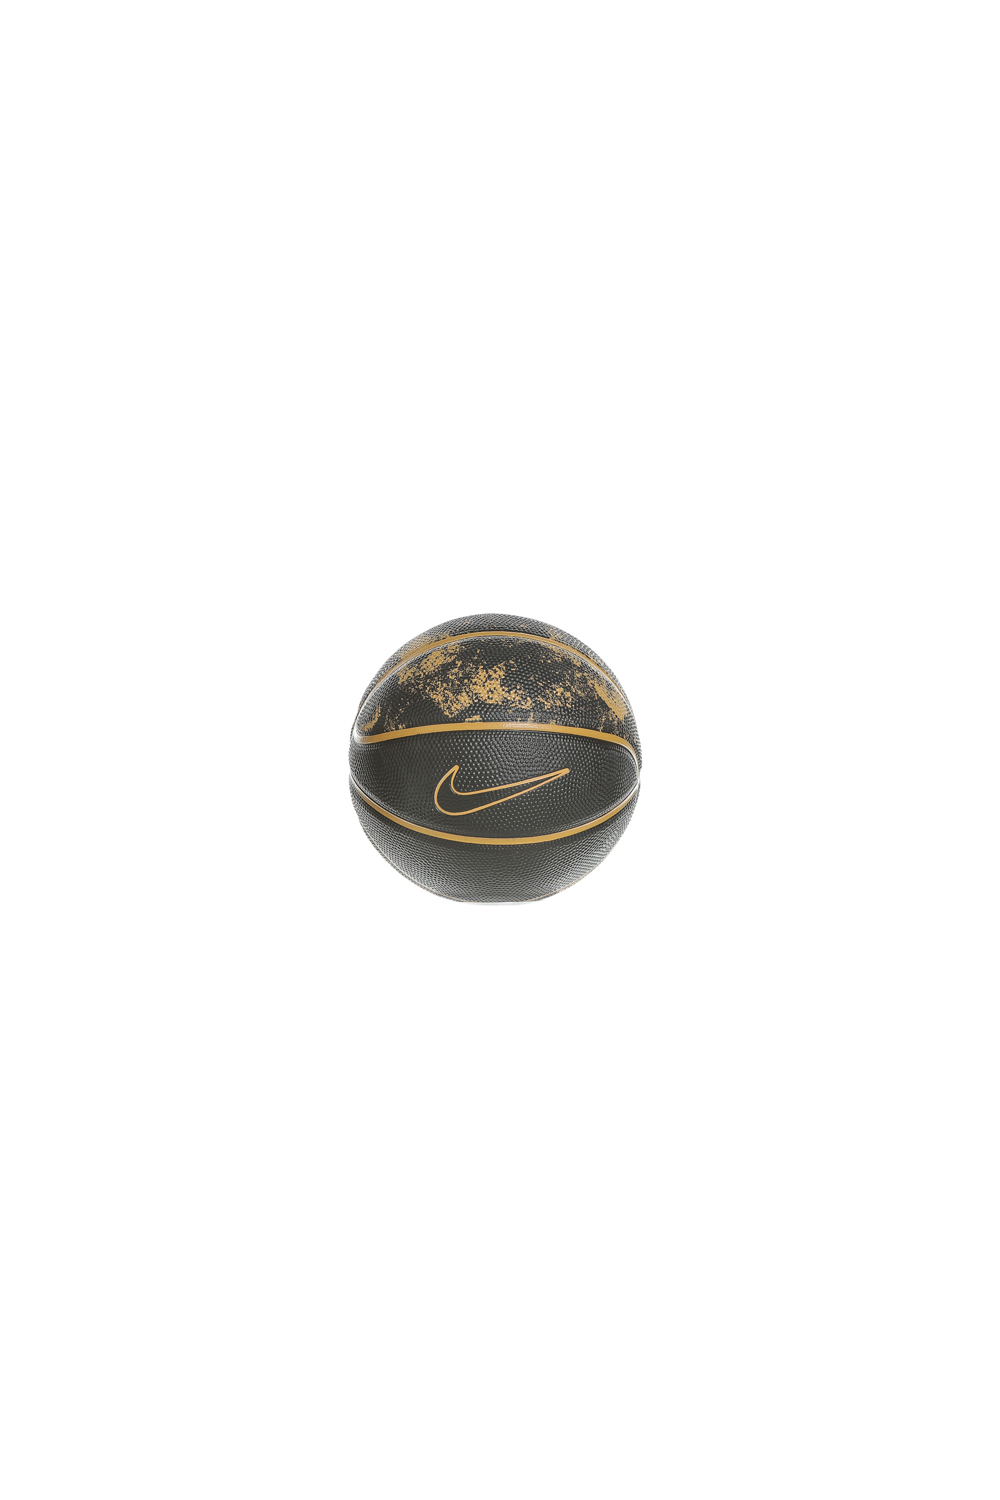 NIKE – Μπάλα basketball mini NIKE LEBRON SKILLS N.KI.14.03 μαύρη χρυσή 1581516.0-71W1